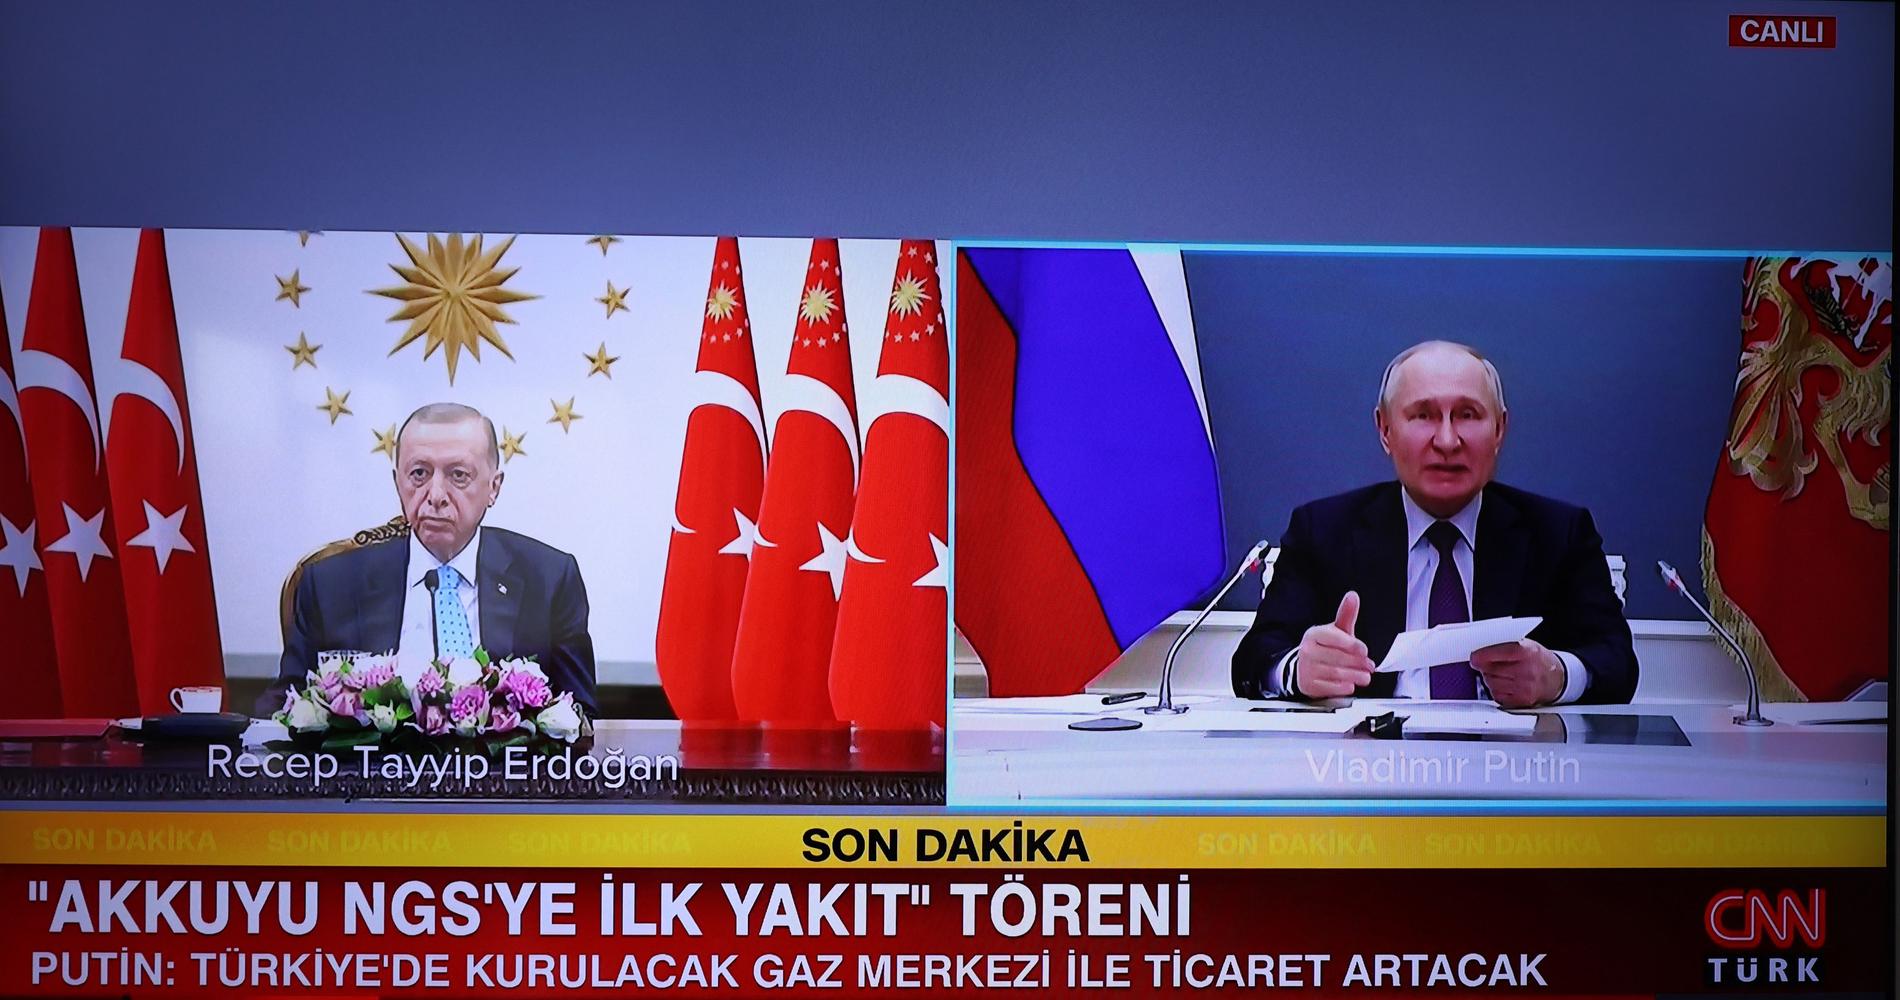 Turkiets president Recep Tayyip Erdogan till vänster och Rysslands president Vladimir Putin möttes virtuellt på torsdag. Medier konstaterade att Edogan som fick avbryta en tv-intervju i tisdags på grund av magproblem, såg tärd ut.